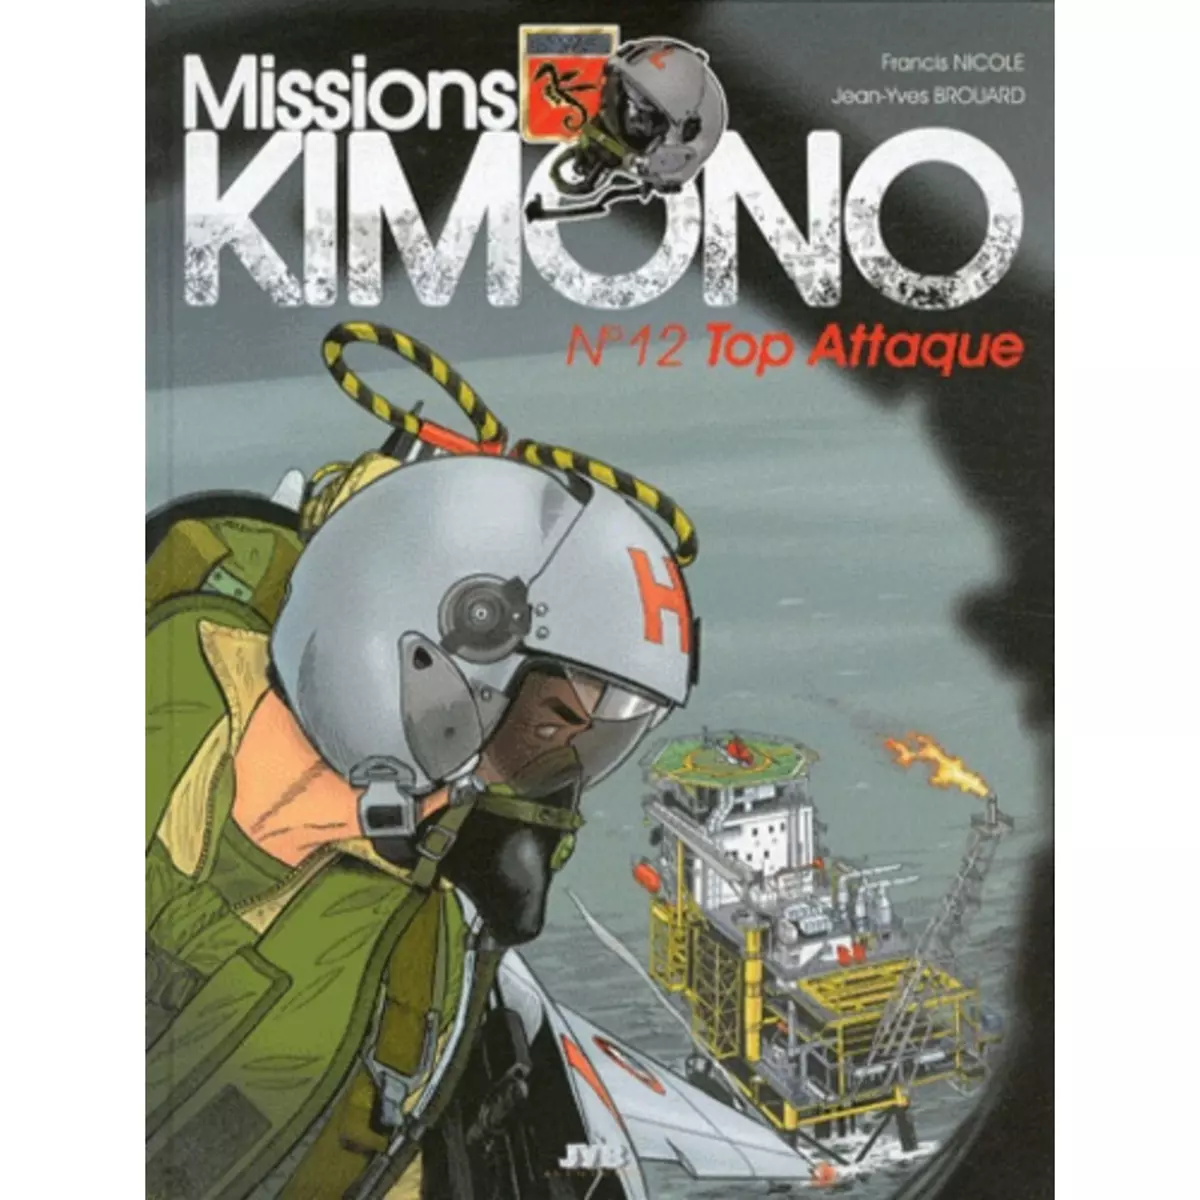  MISSIONS KIMONO TOME 12 : TOP ATTAQUE, Brouard Jean-Yves